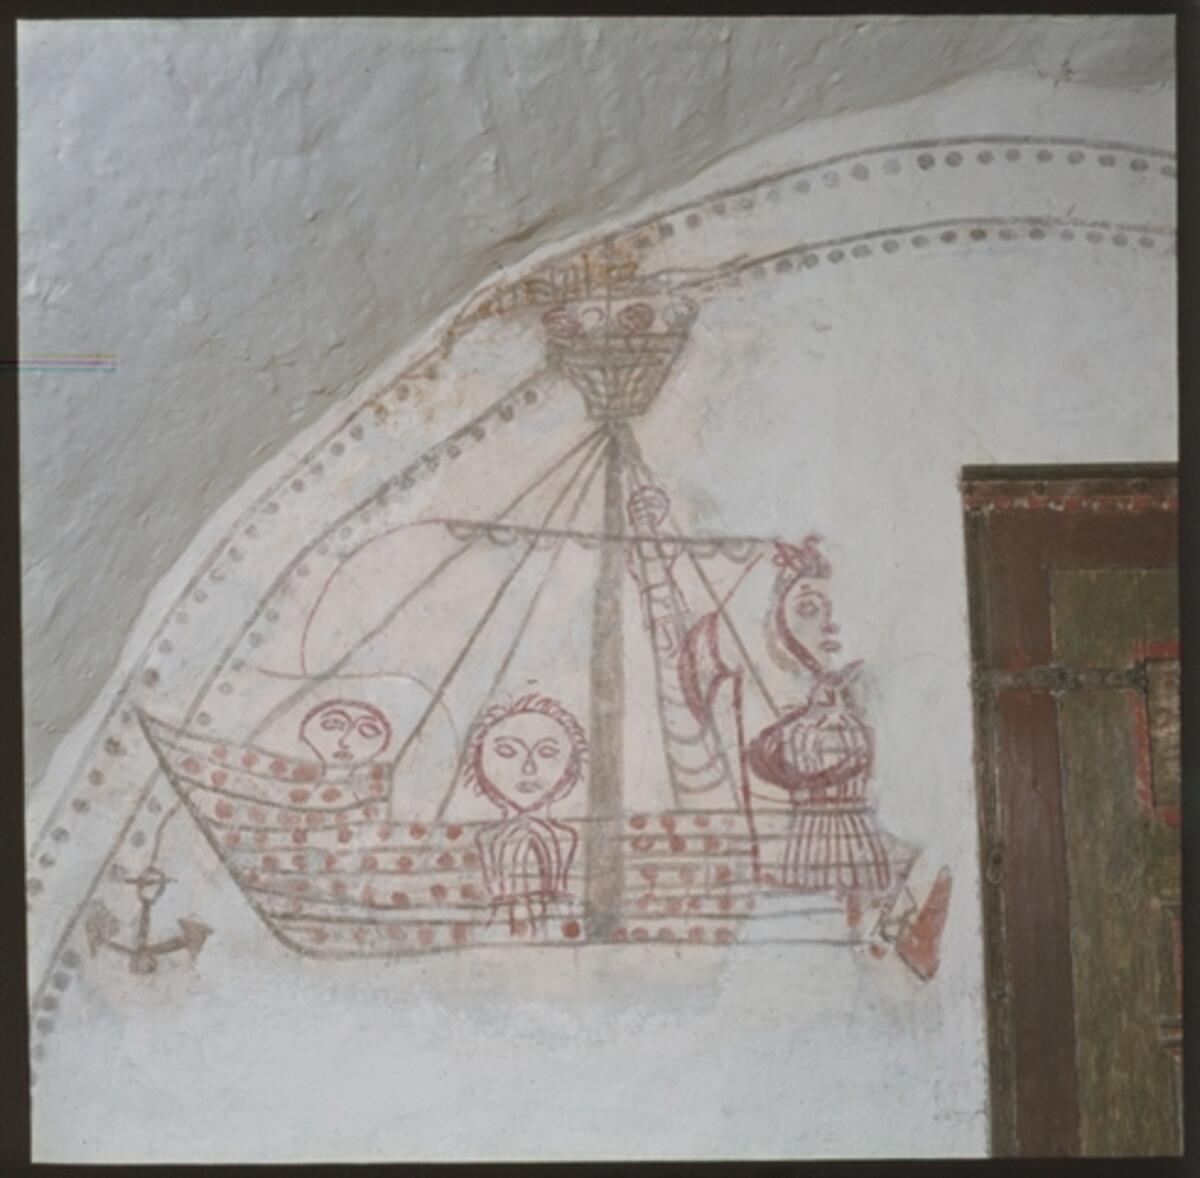 Votiivimaalaus Finströmin kirkon seinässä. Maalaus on 1400-luvulta ja restauroitu 1920- ja 1970-luvuilla. Kirkko sijaitsee Ahvenanmaalla. Kuvaaja: Museovirasto / P. O. Welin